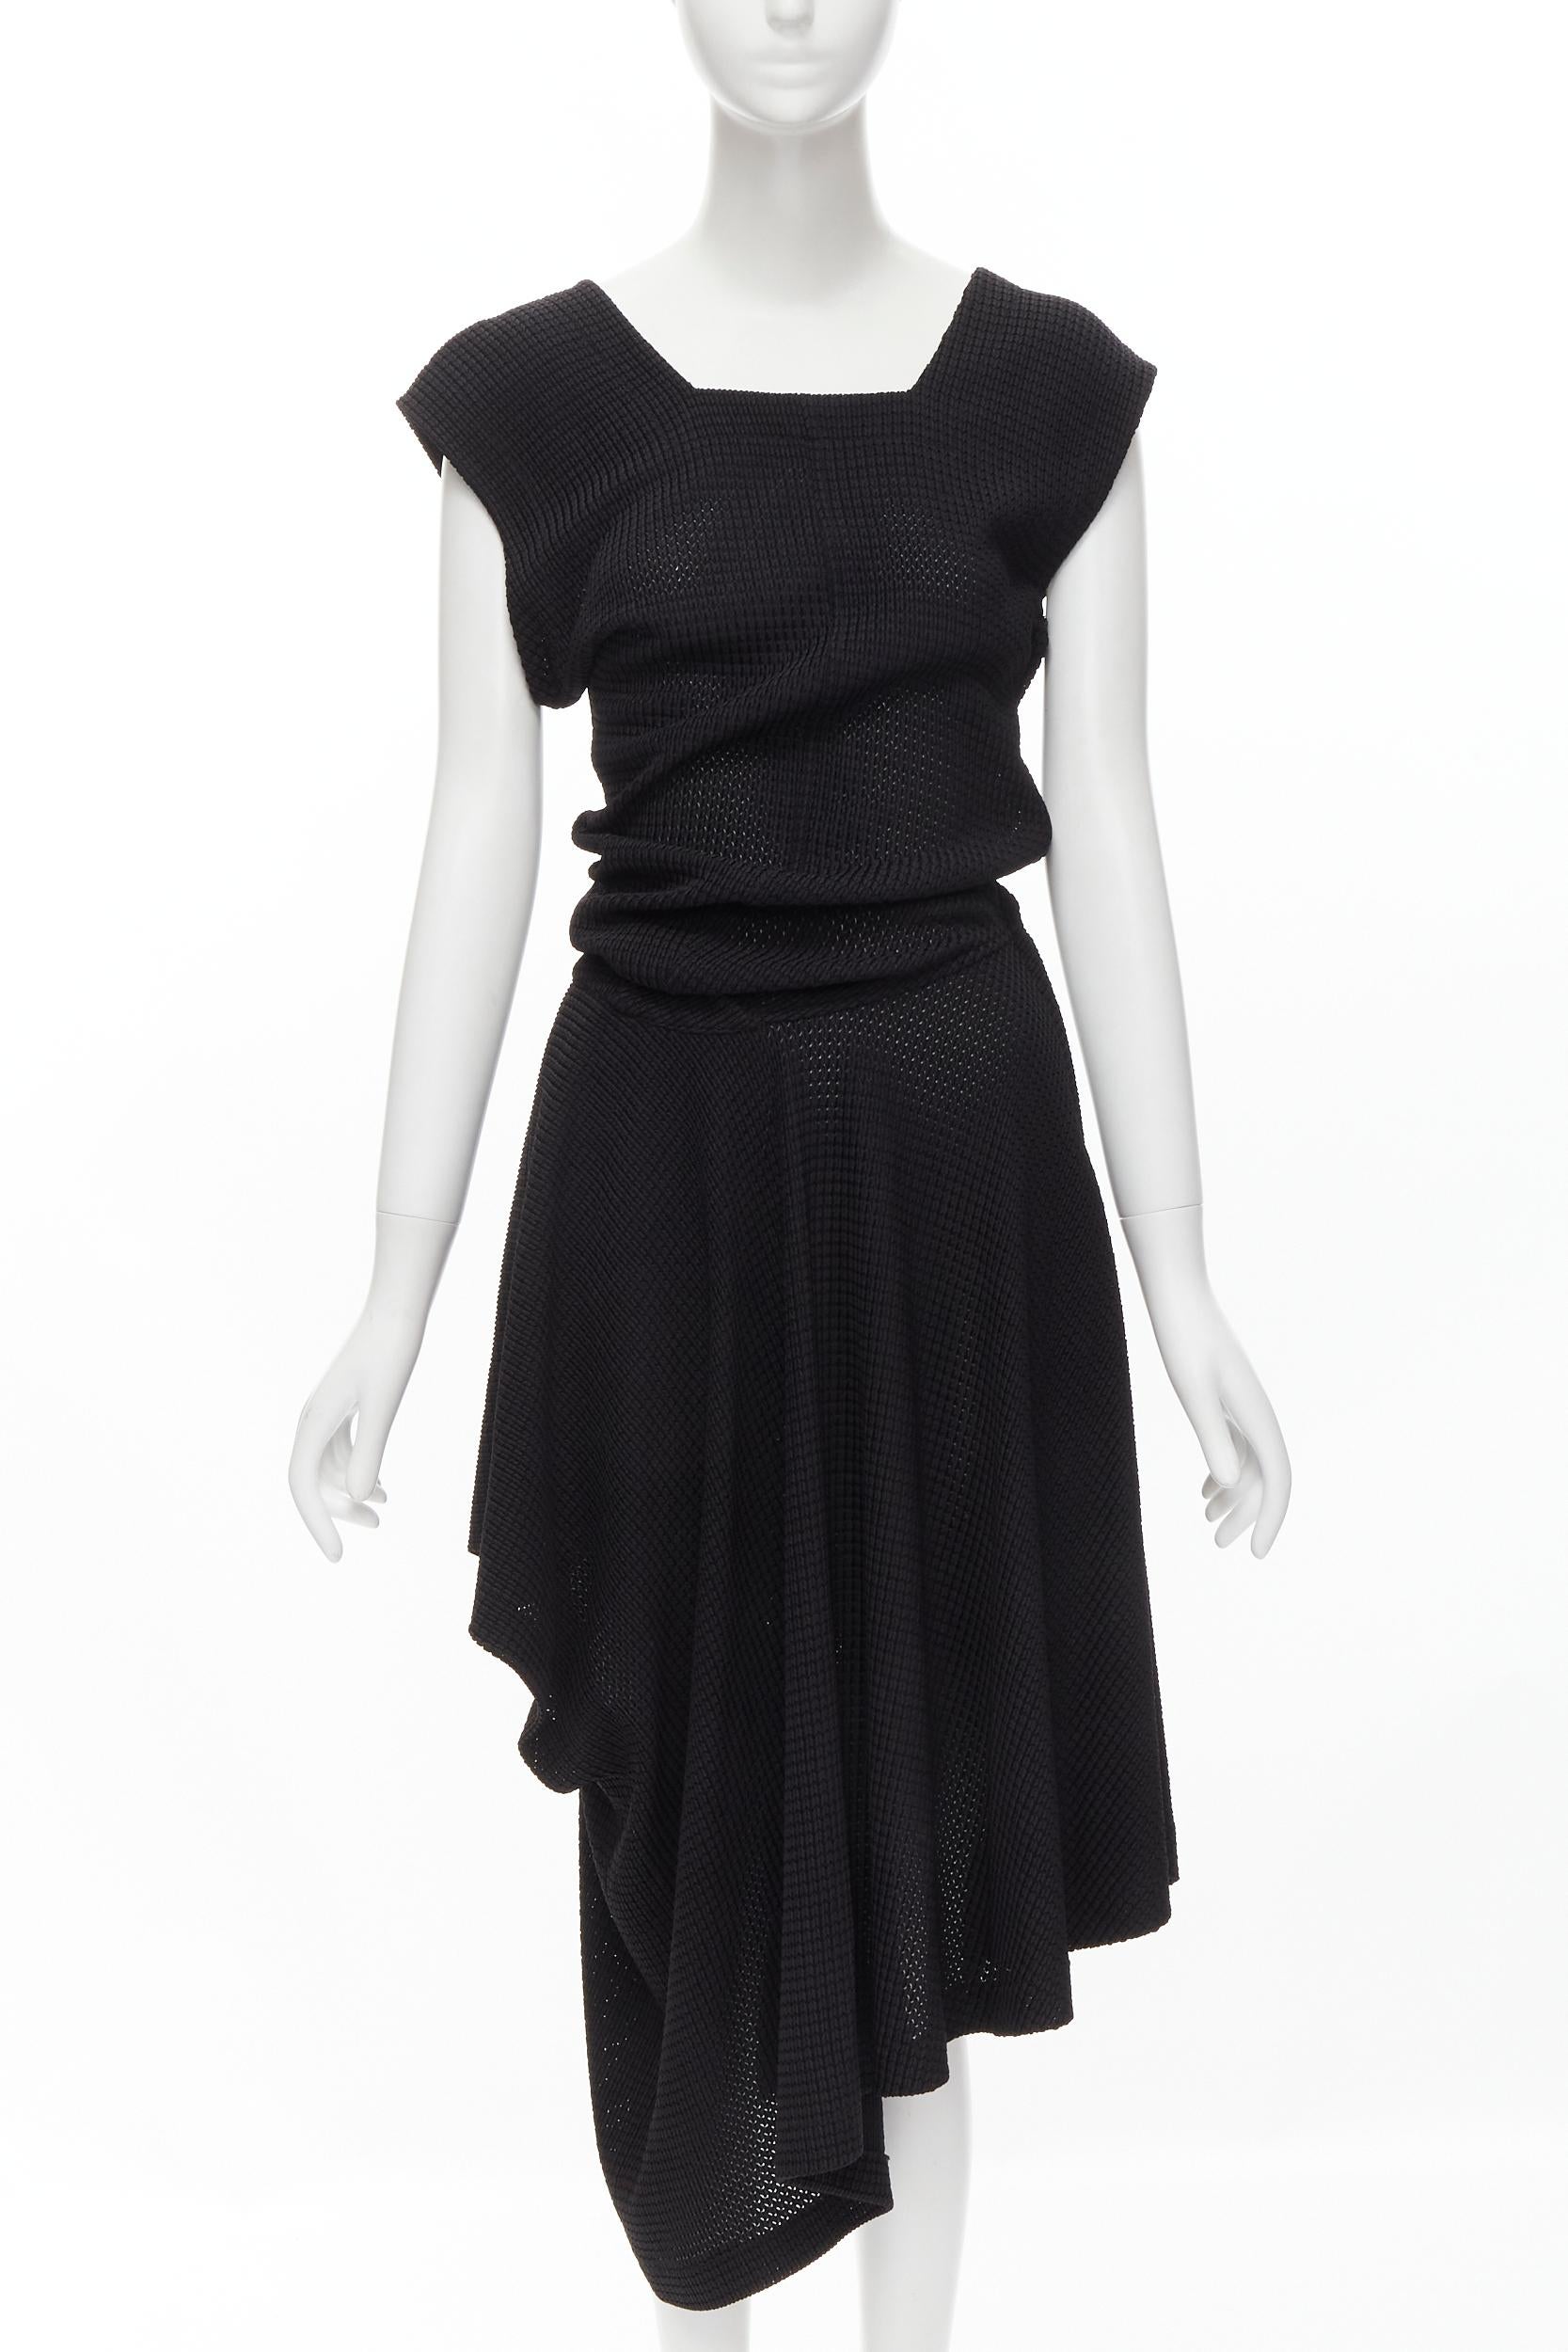 Black COMME DES GARCONS Vintage 1980s acetate nylon draped handkerchief dress M For Sale